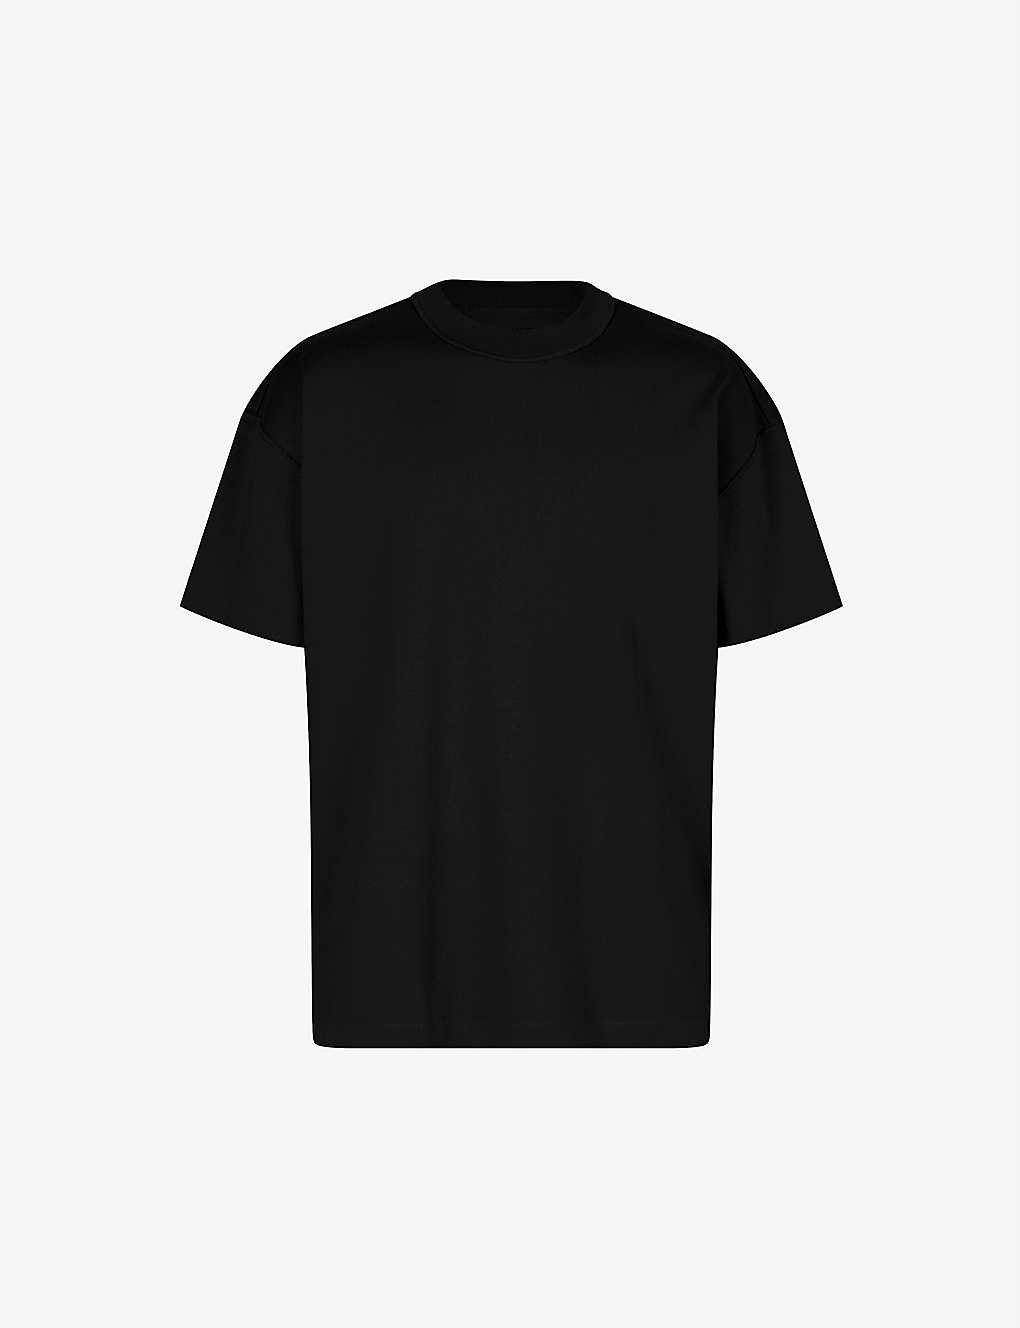 Shop Allsaints Men's Jet Black Isac Oversized Crewneck Cotton T-shirt